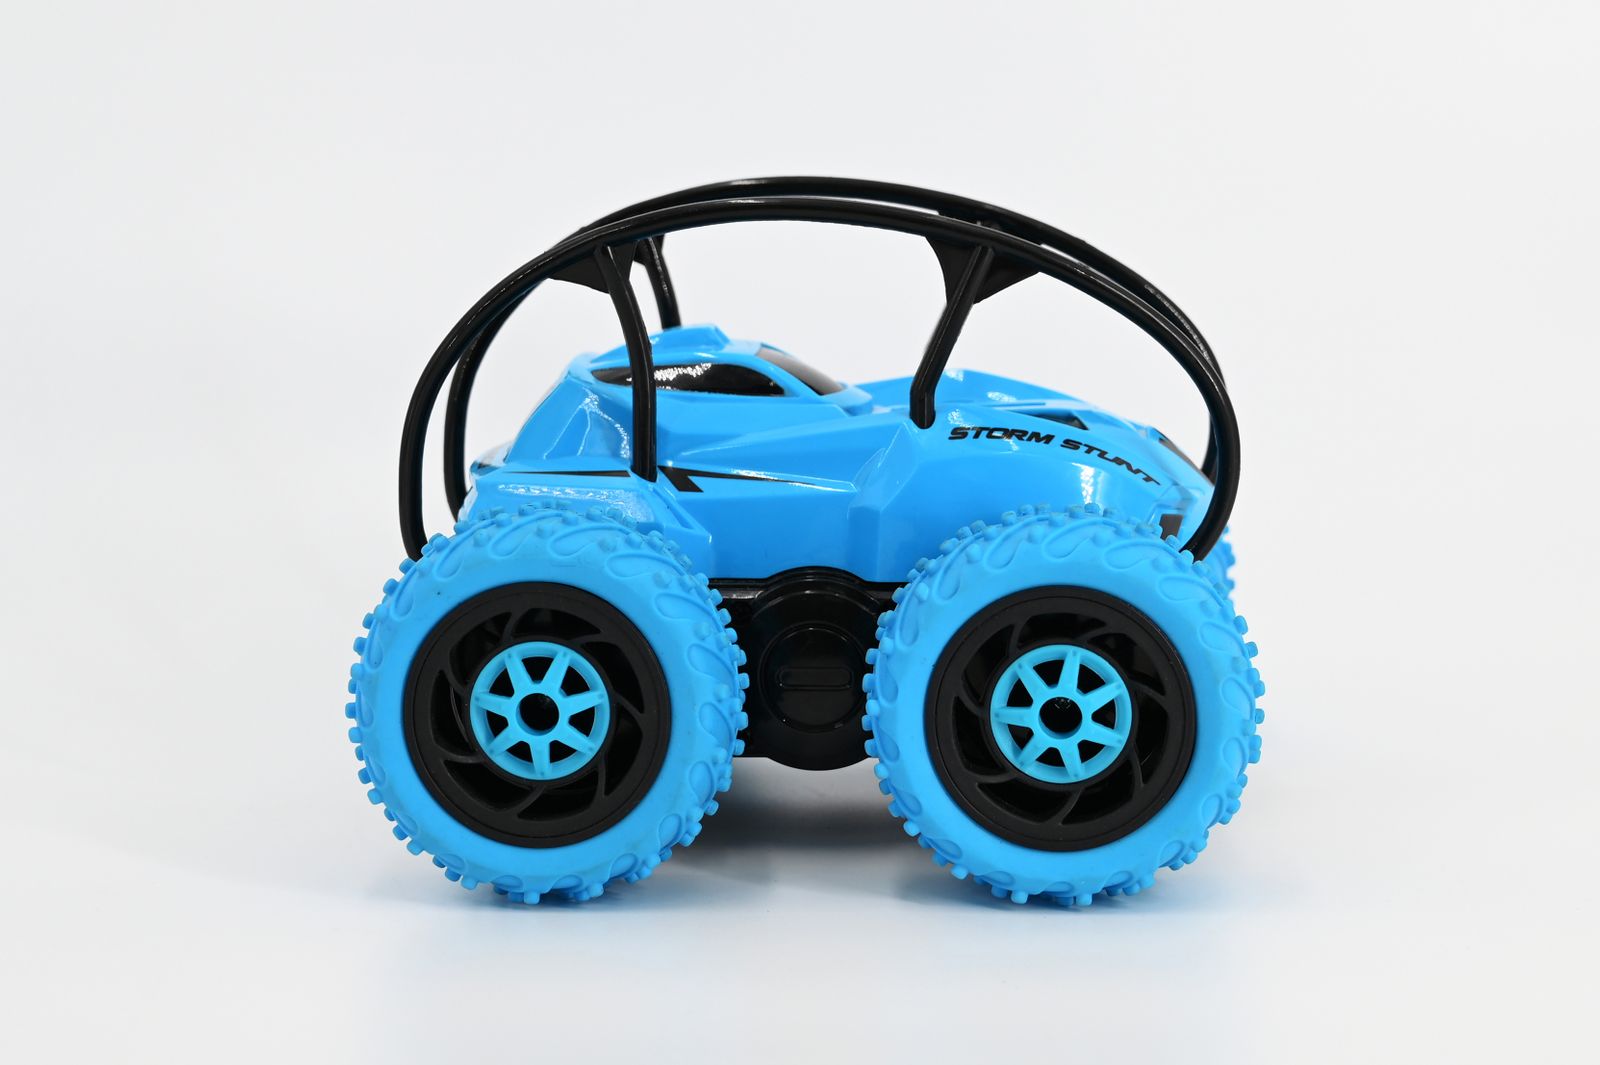 [送料無料] Rev-Volt 4輪スタントラジオコントロールトイビークル w/ 360º Spin - Blue (High Speed, Stunts &amp; High Voltage Performance) [楽天海外通販] | Rev-Volt 4 Wheel Stunt Radio Control Toy Vehicle w/ 360º Spin - B